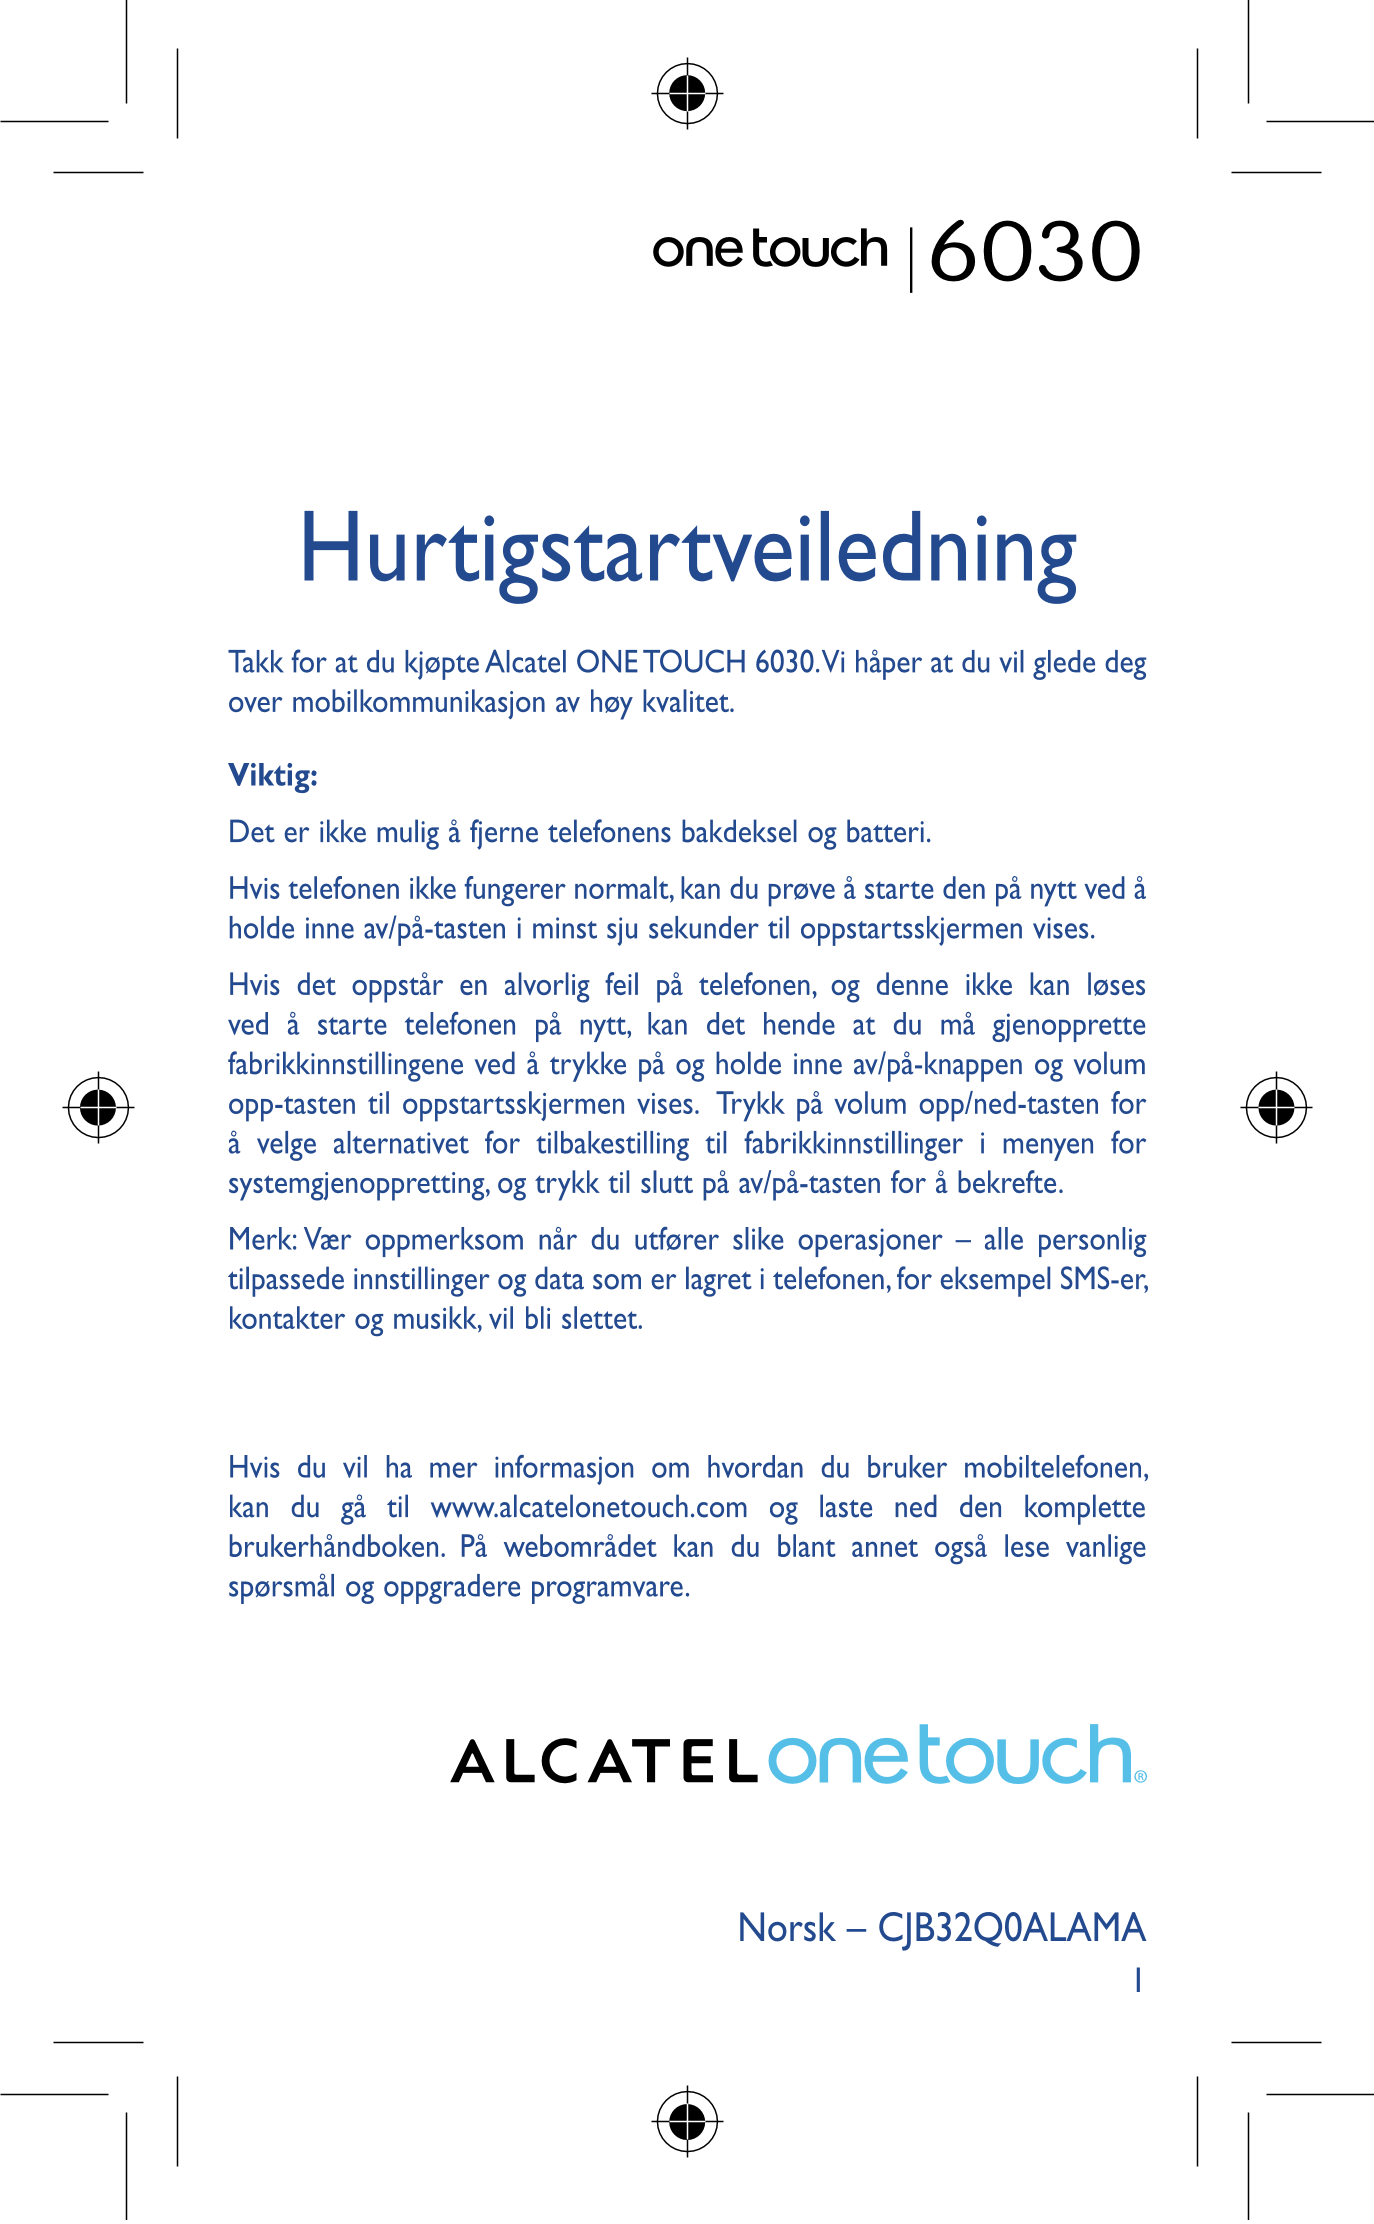 6030
Hurtigstartveiledning
Takk for at du kjøpte Alcatel ONE TOUCH 6030. Vi håper at du vil glede deg 
over mobilkommunikasjon a